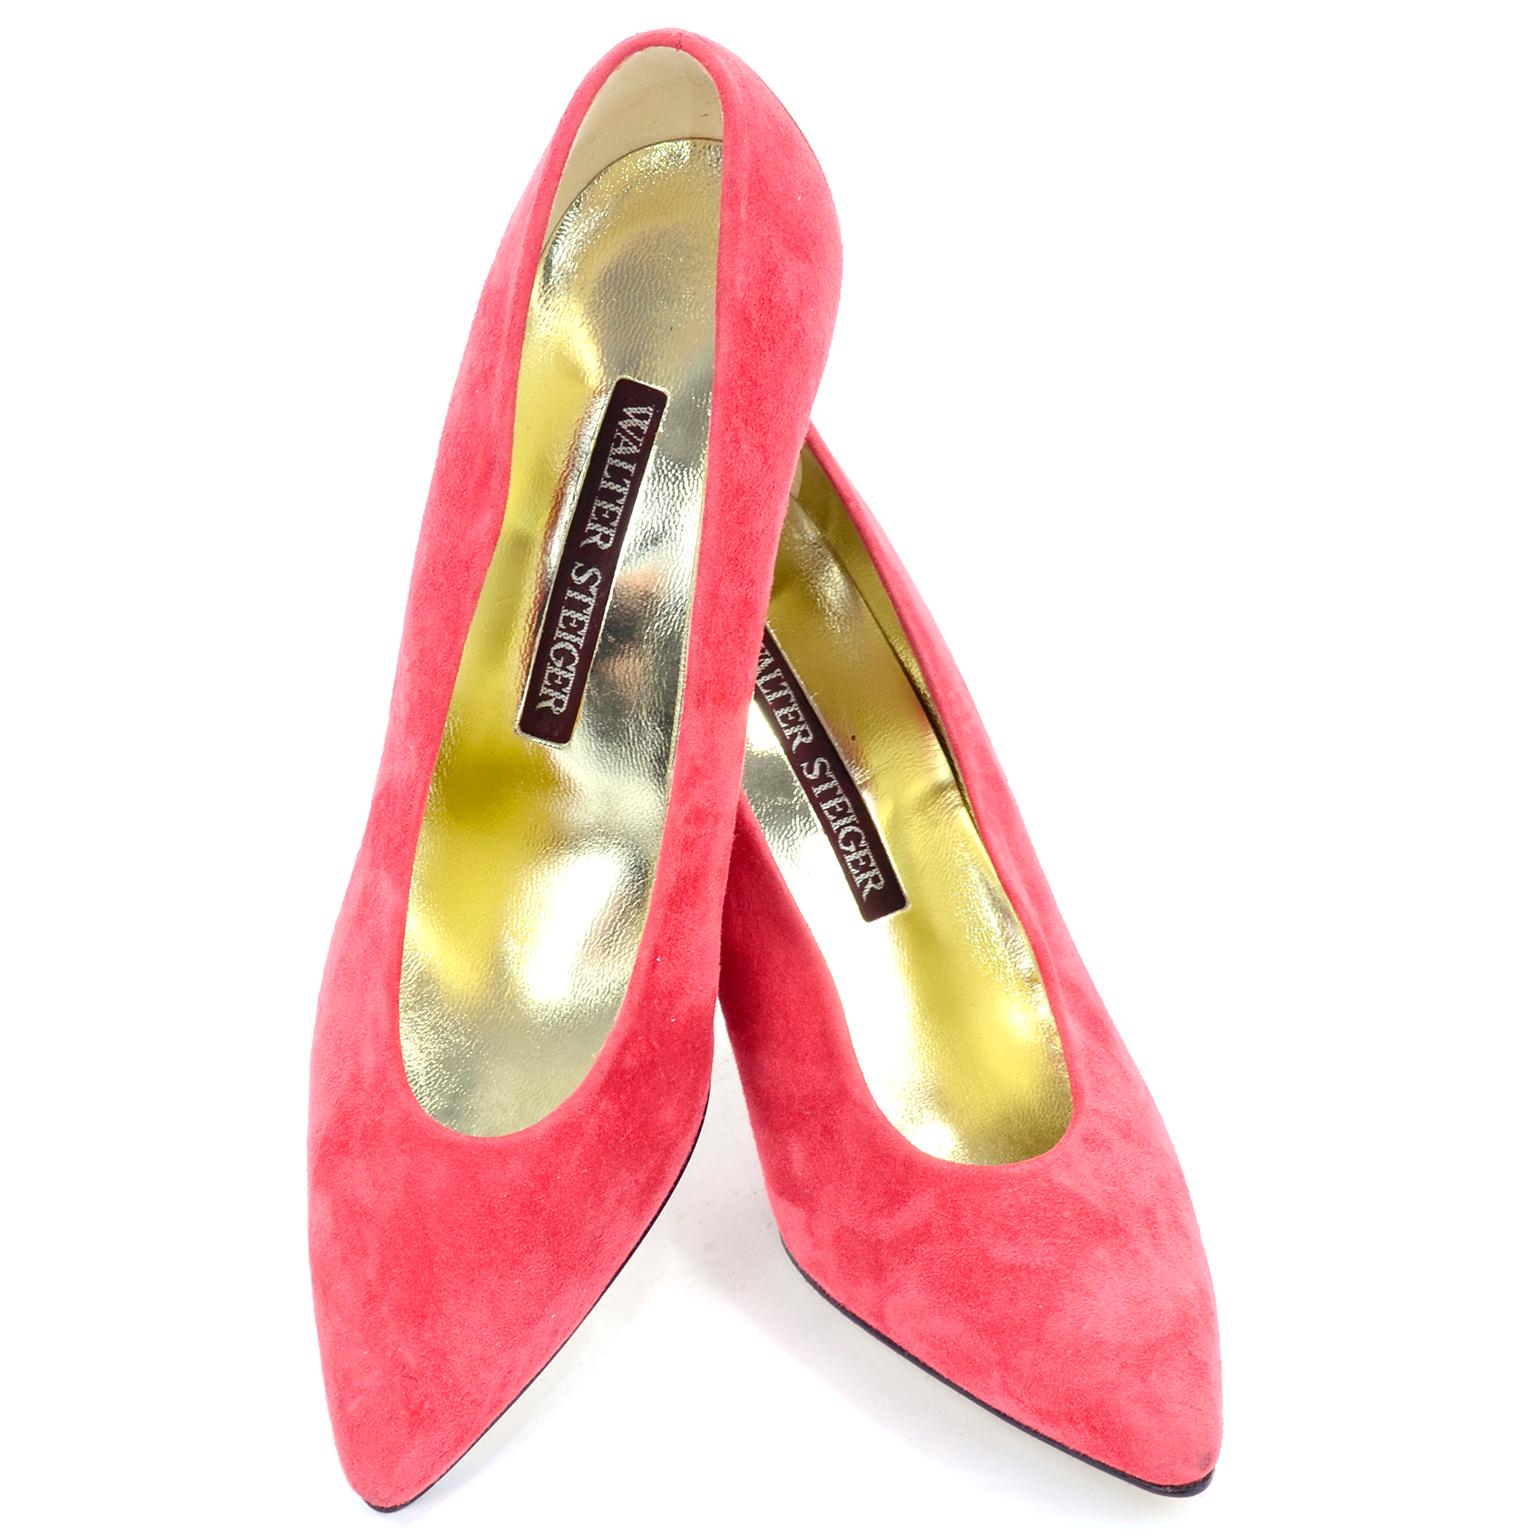 Dies sind unglaubliche Vintage Walter Steiger Schuhe in einem rosafarbenen Lachs oder rosa Koralle Wildleder.  Der Absatz ist hinten gebogen und besteht aus einem reflektierenden silbernen Metall, das einem Spiegel ähnelt. Vielleicht einmal, wenn